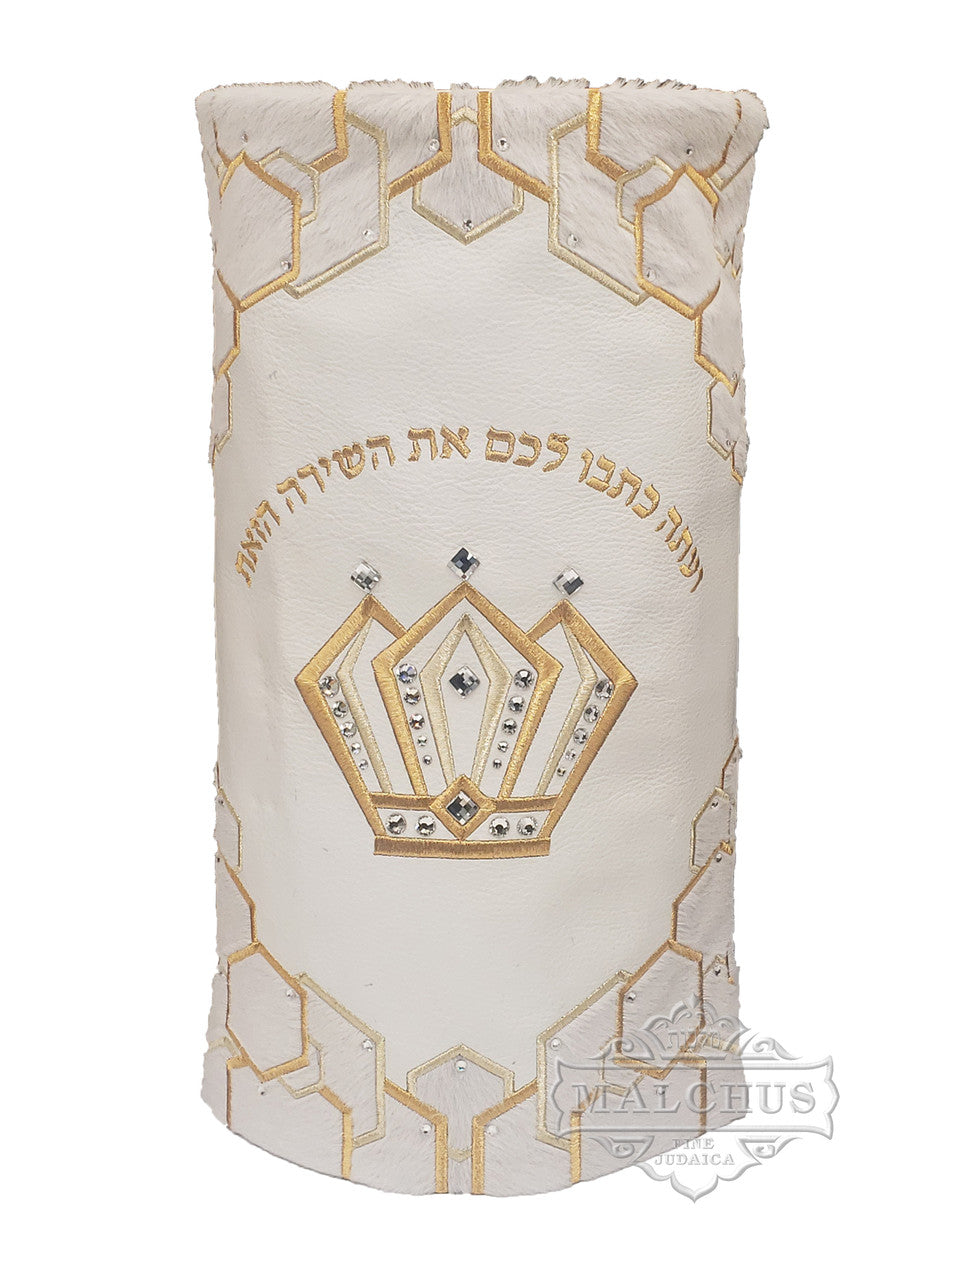 Sefer Torah Mantel #75-2